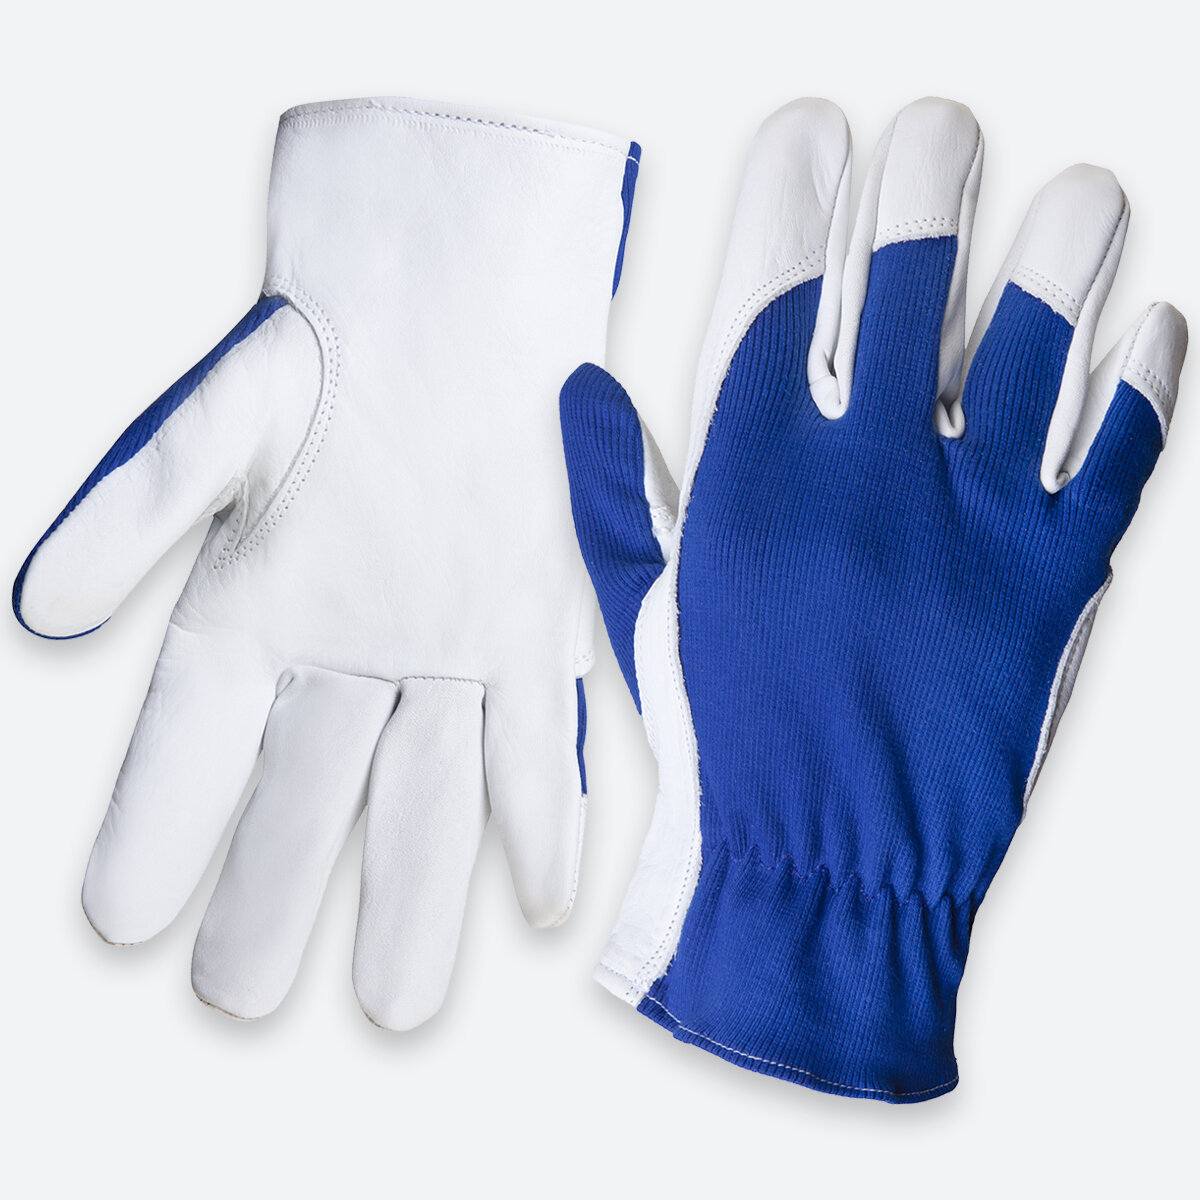 Защитные рабочие перчатки JLE321(L) Locksmith из кожи класса А и хлопка со свободной манжетой, - 1 пара